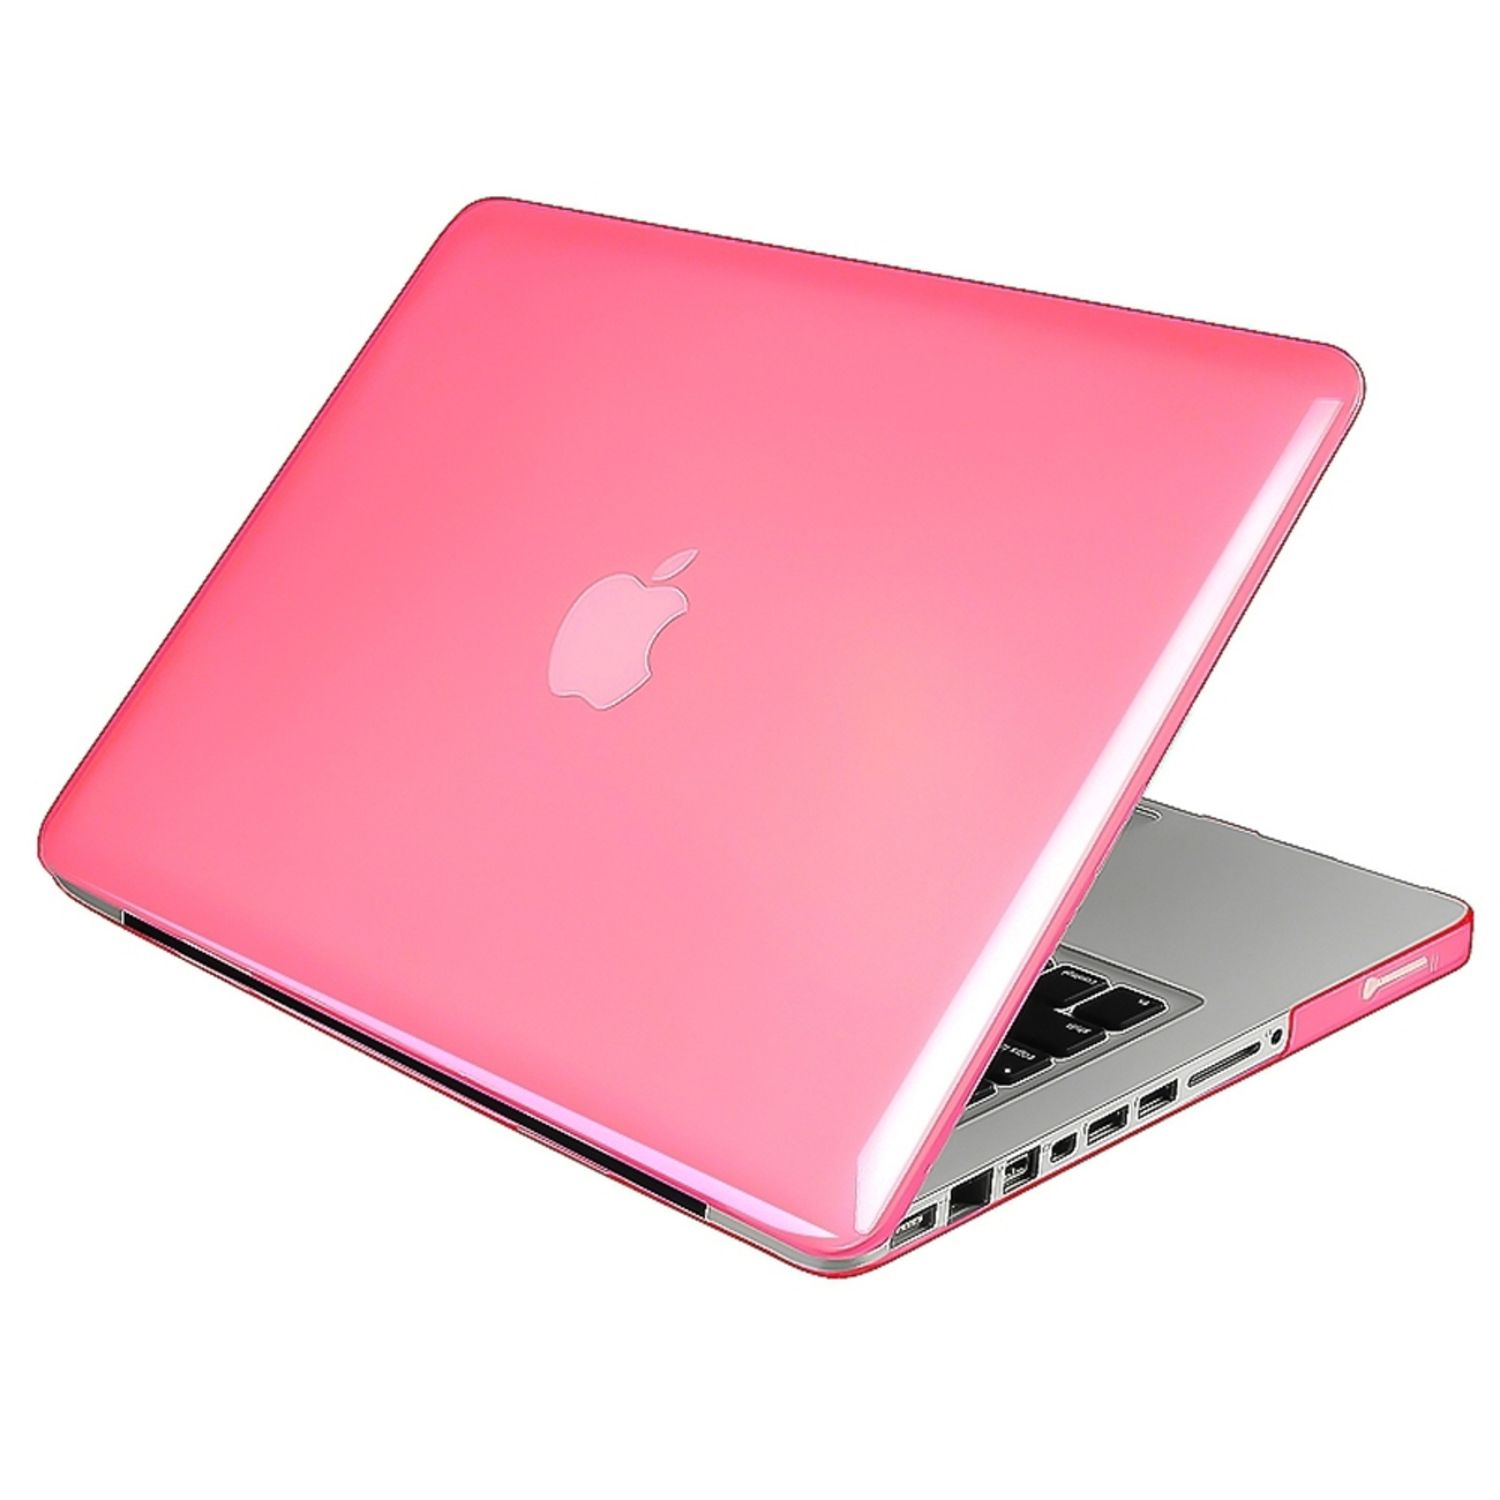 Розовый ноутбук купить. Пинк макбук. Ноутбук розовый. Ноутбук Apple розовый. Ноутбук розовый с яблочком.